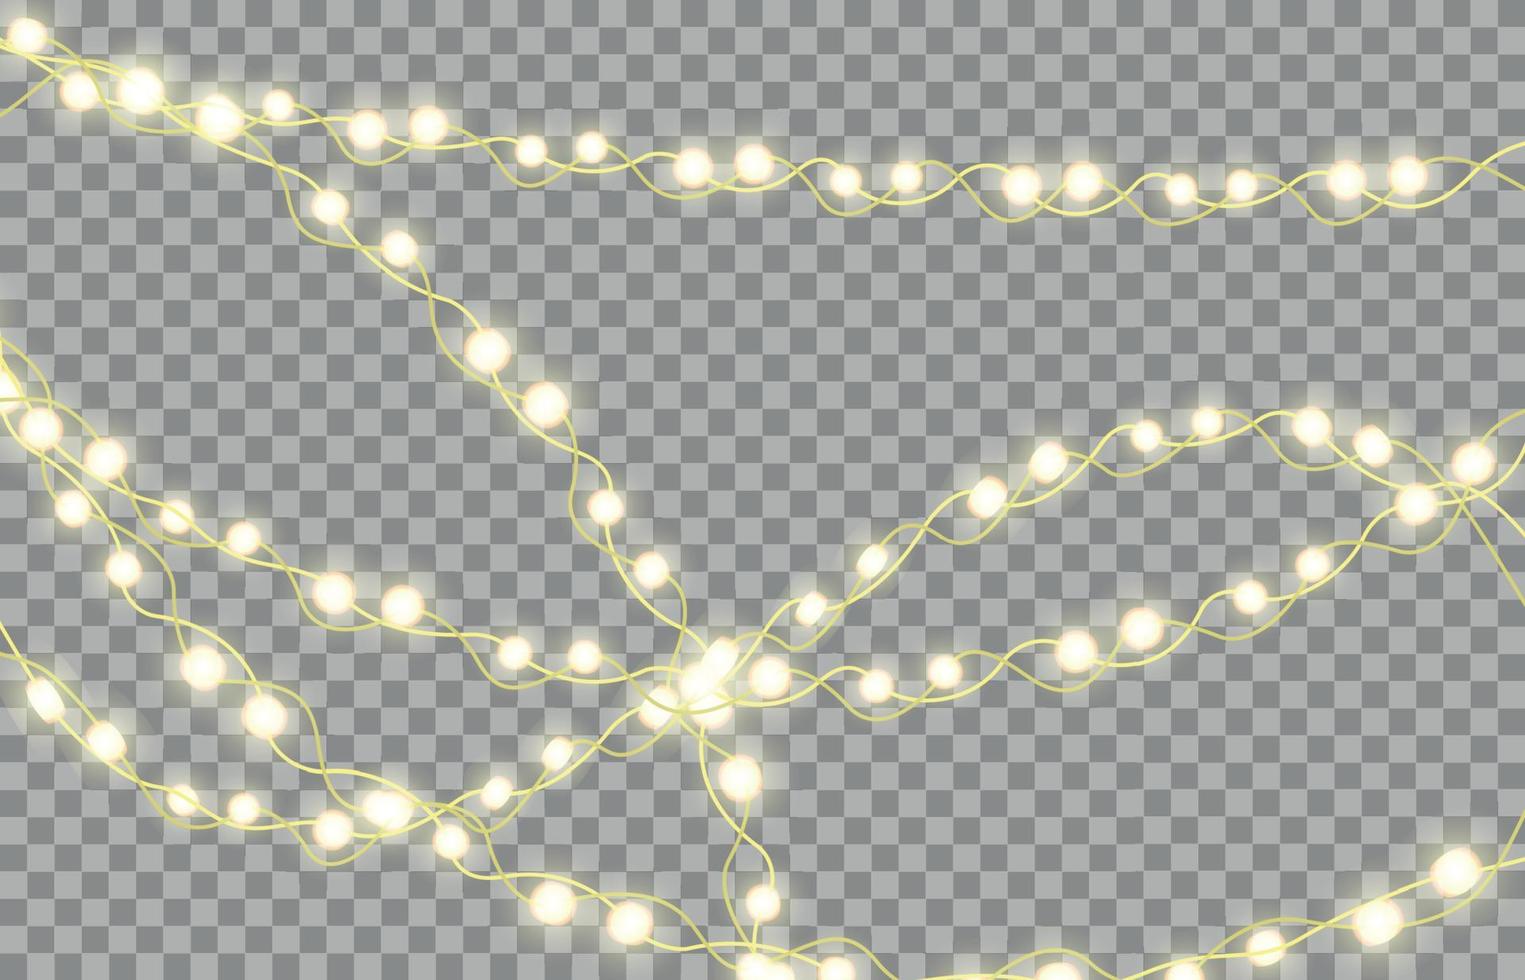 guirlande lumineuse colorée pour le nouvel an et les arbres de noël. panneaux d'affichage de lumières de vacances led, panneaux d'affichage sur fond transparent. illustration vectorielle vecteur